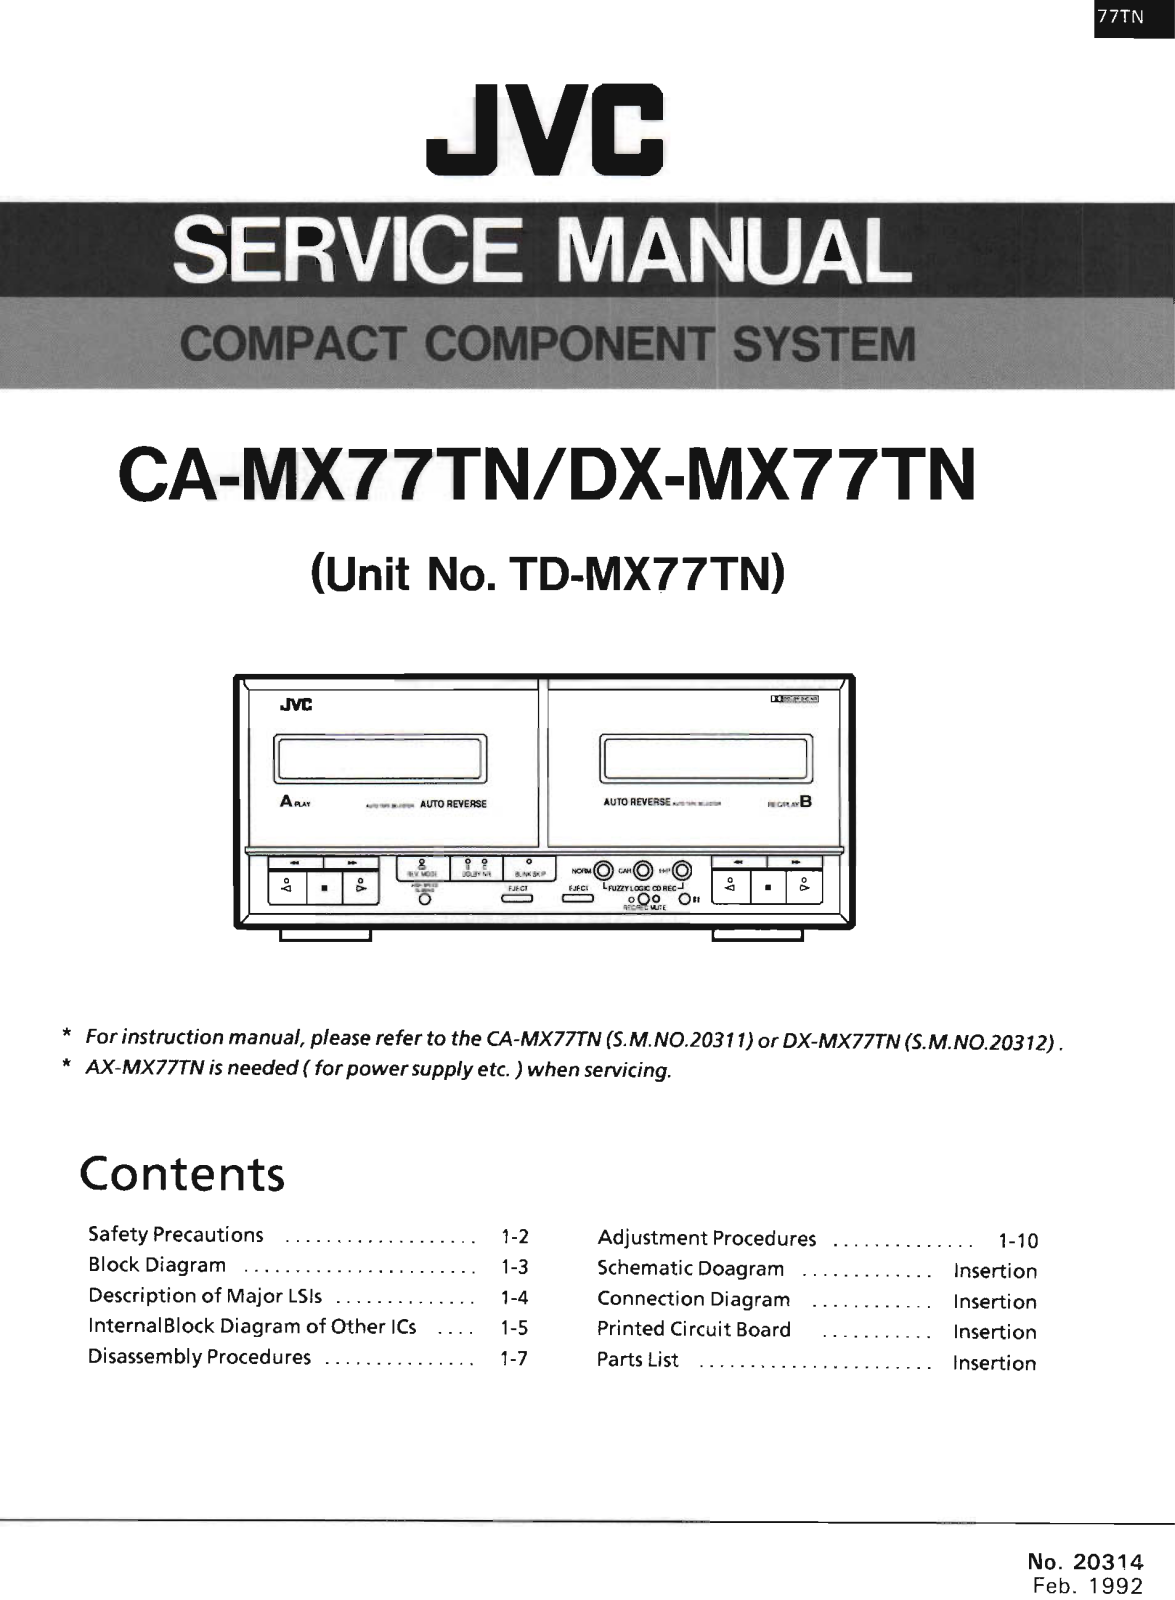 Jvc TD-MX77-TN Service Manual